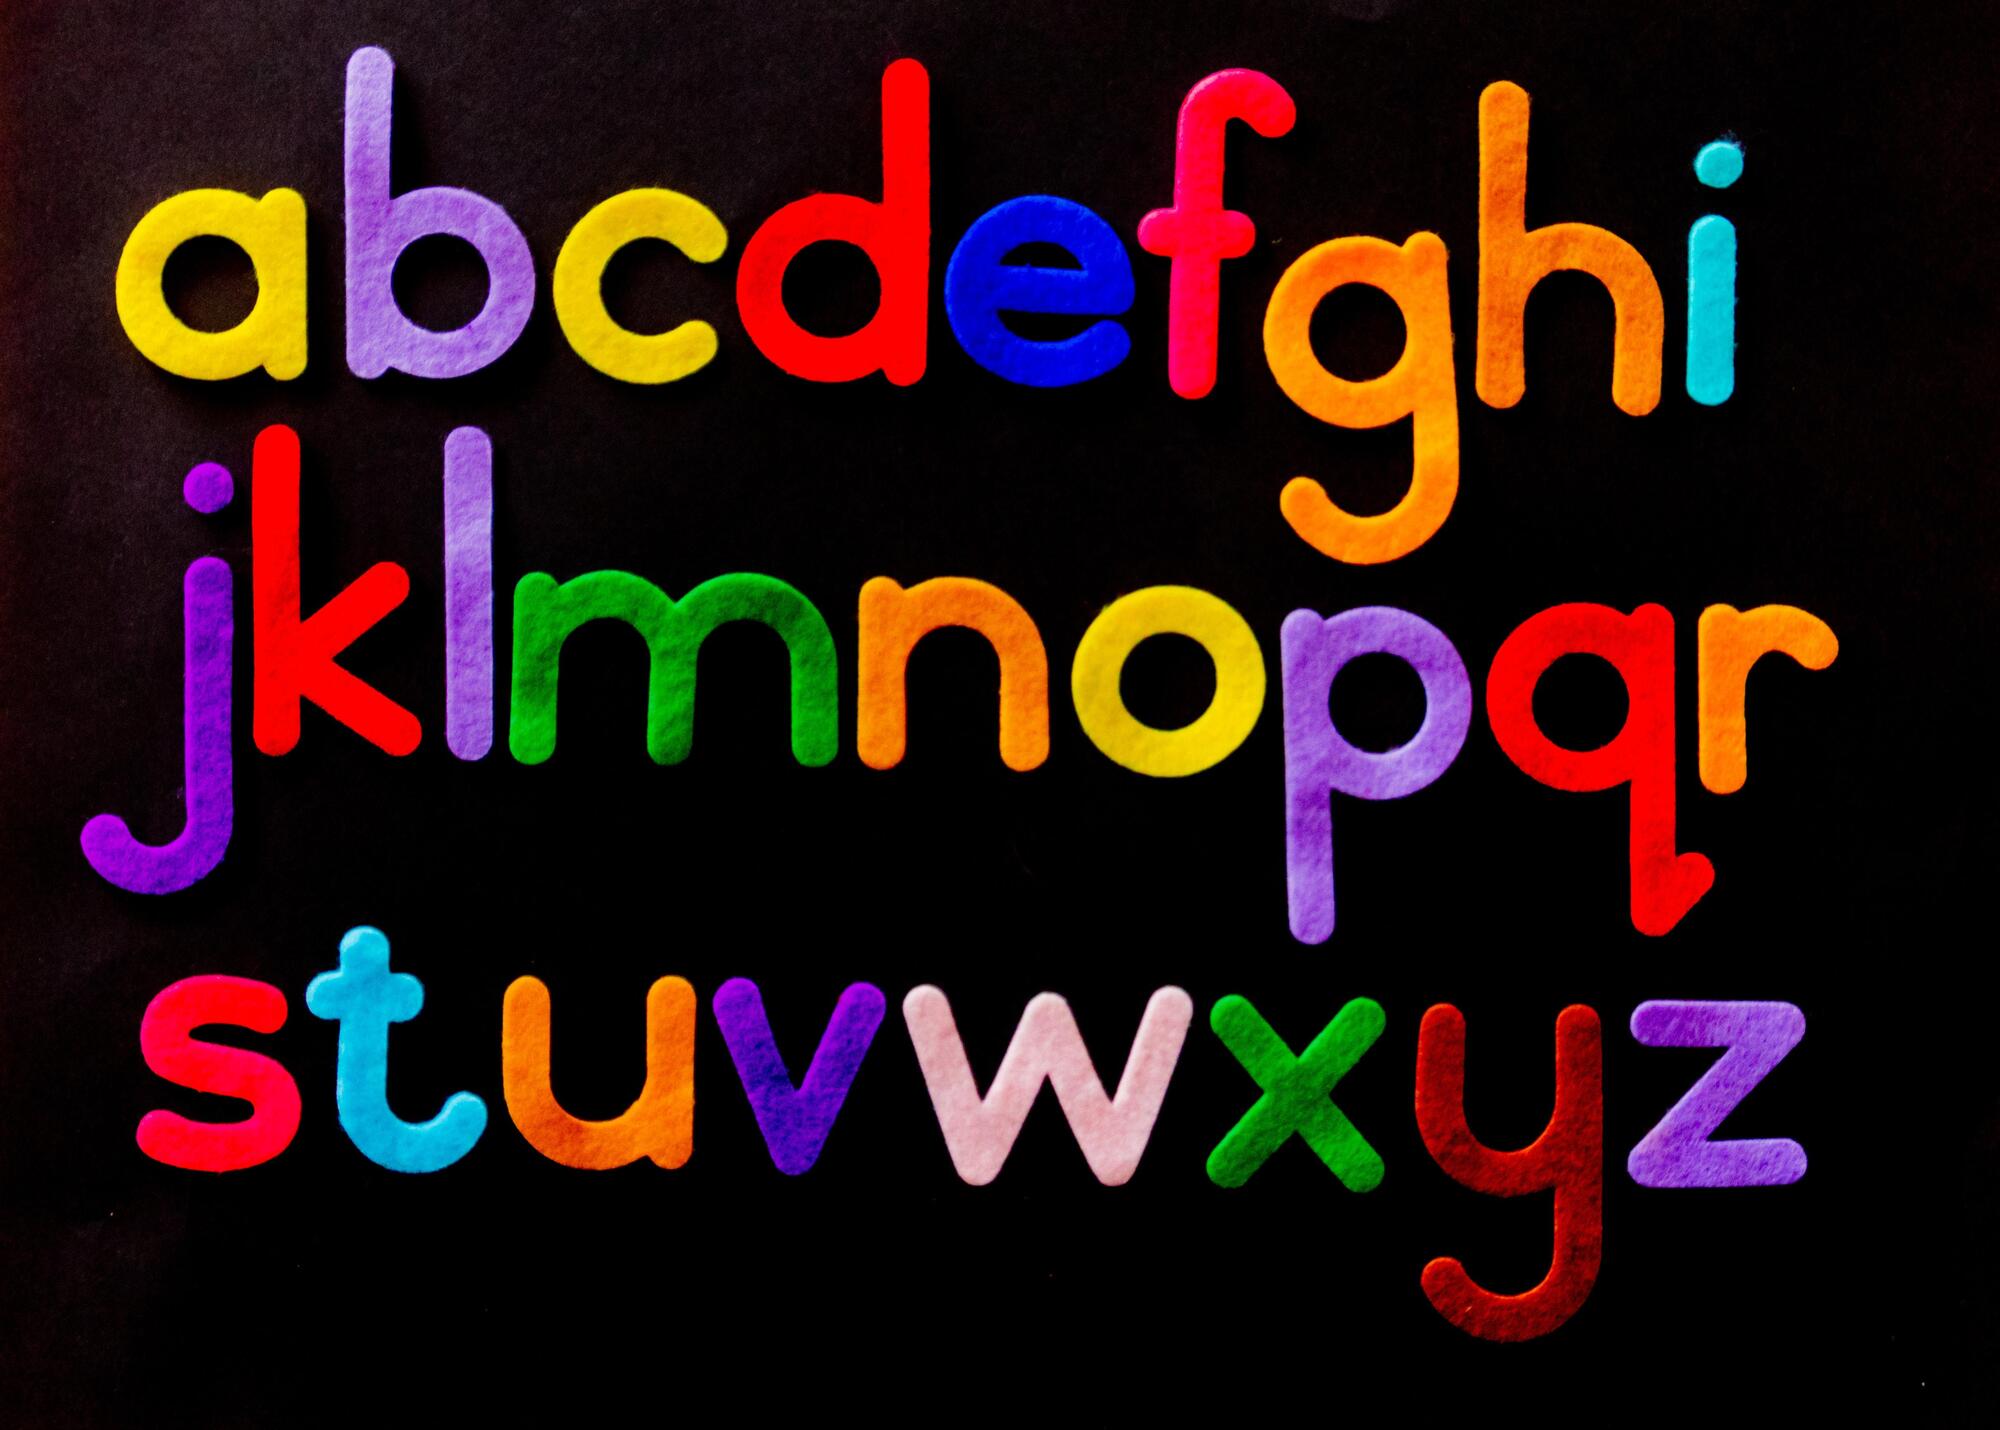 Buchstaben des Alphabets